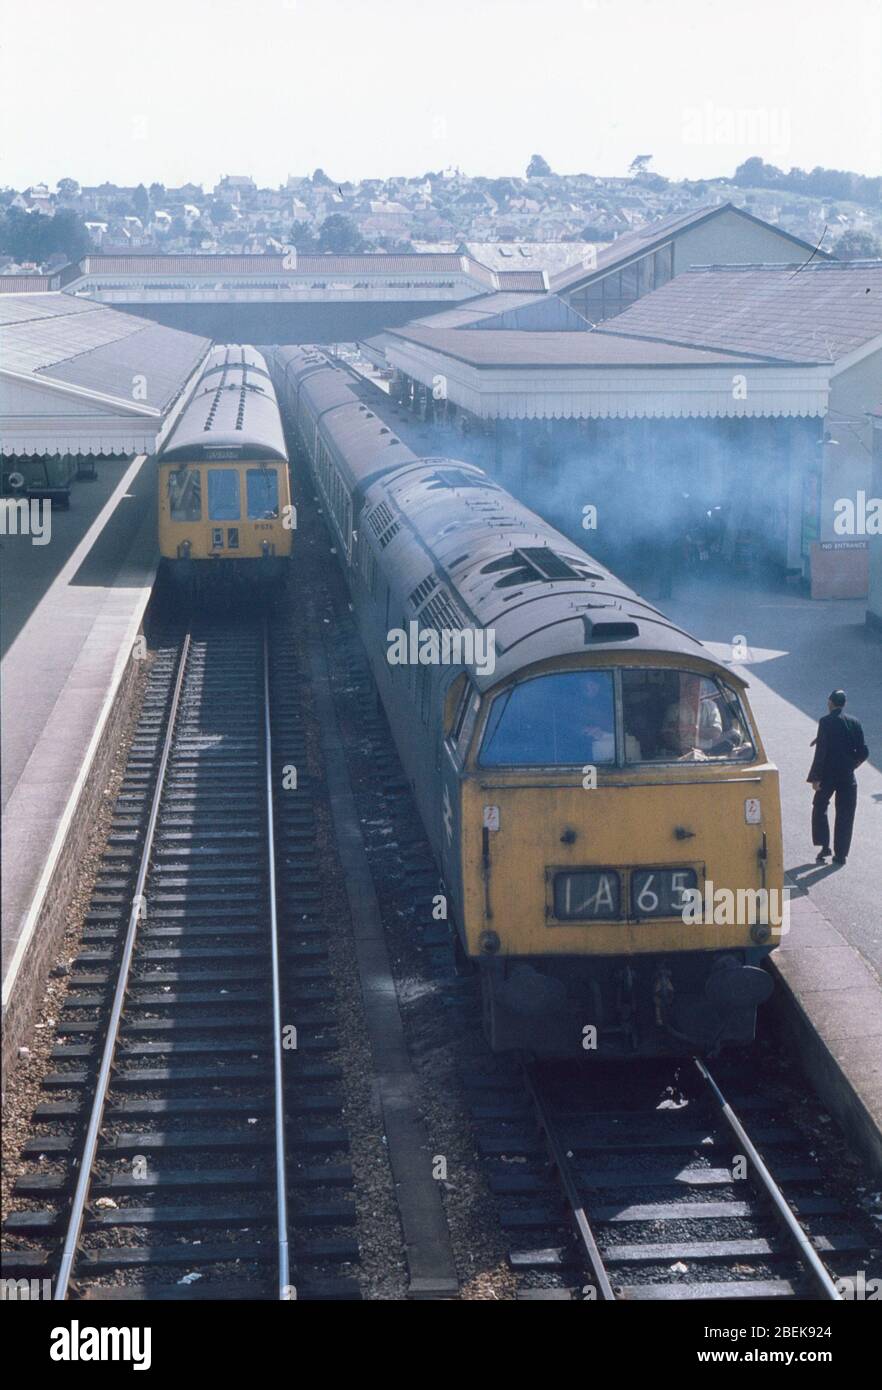 1974, scene on British Railways, UK, Paignton station, south west England Stock Photo